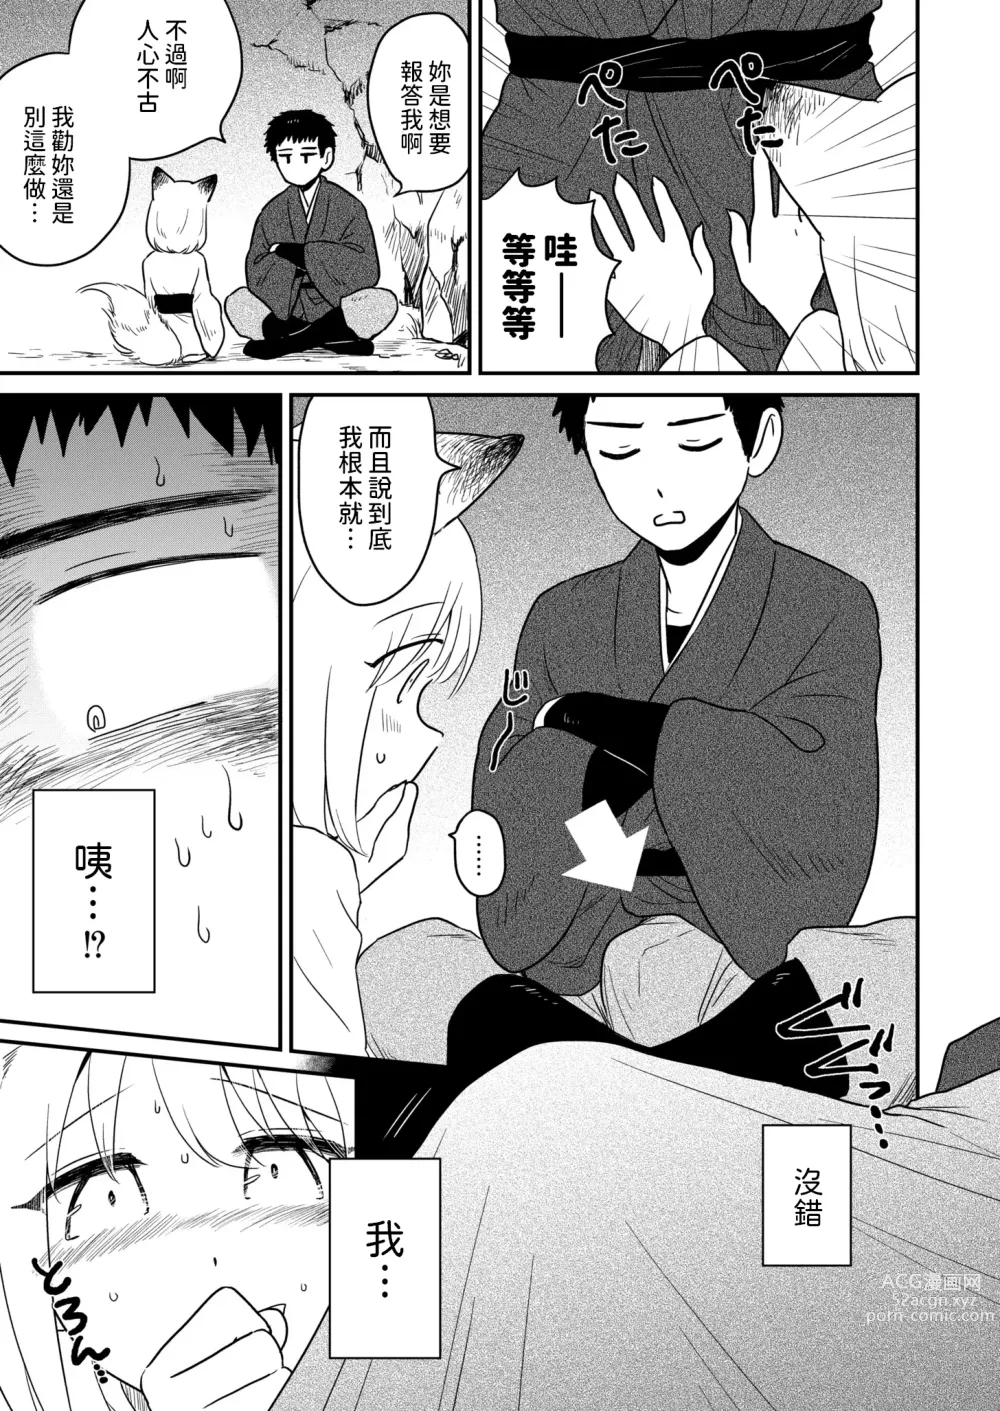 Page 7 of manga Kitsune